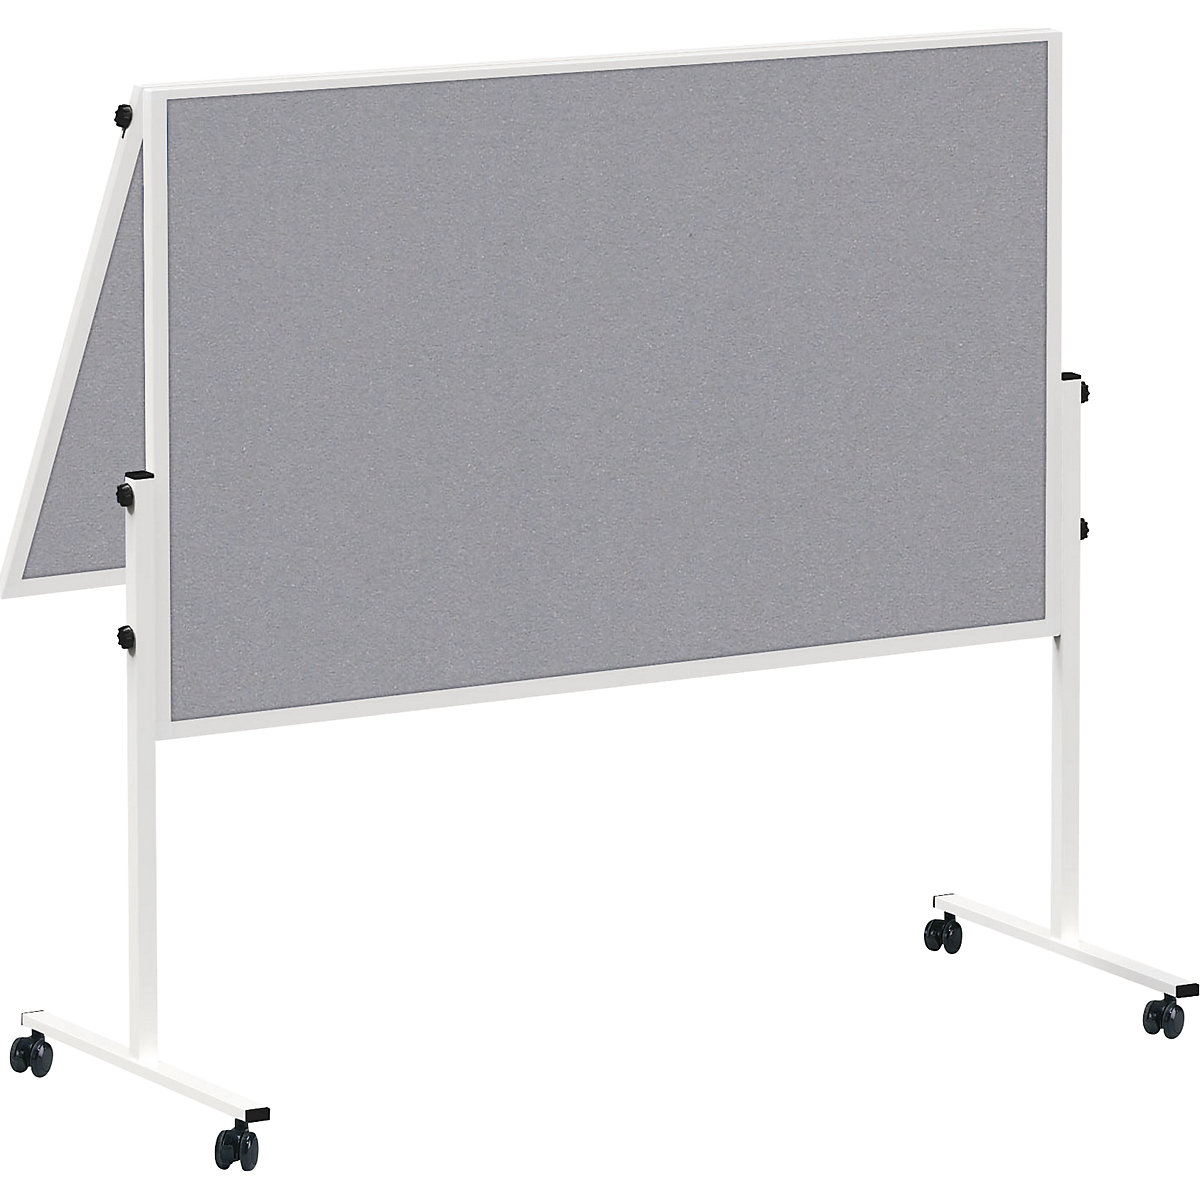 MAULsolid presentation board, mobile – MAUL, folding, felt colour grey-6